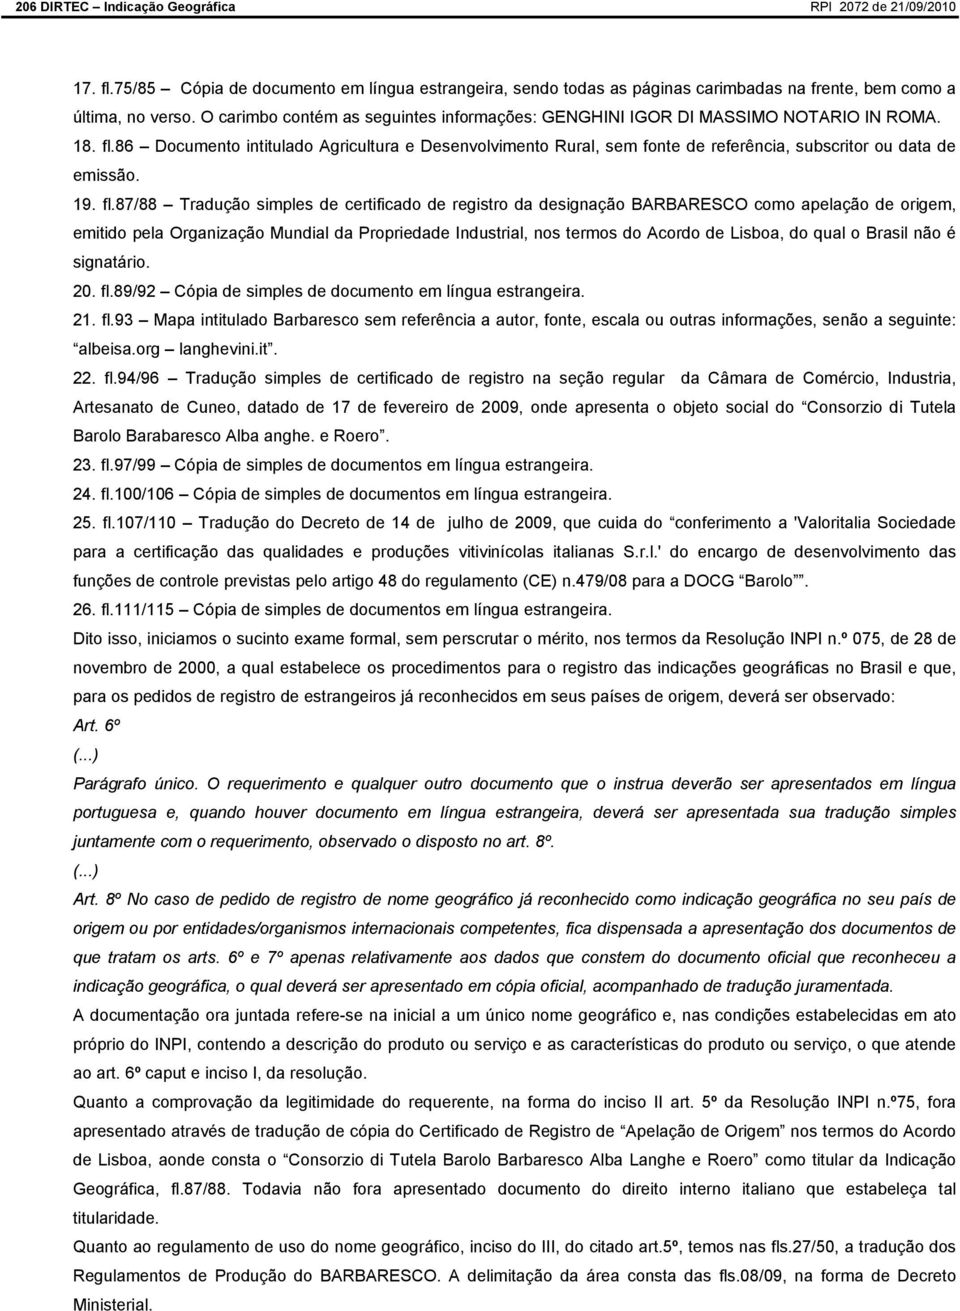 87/88 Tradução simples de certificado de registro da designação BARBARESCO como apelação de origem, emitido pela Organização Mundial da Propriedade Industrial, nos termos do Acordo de Lisboa, do qual